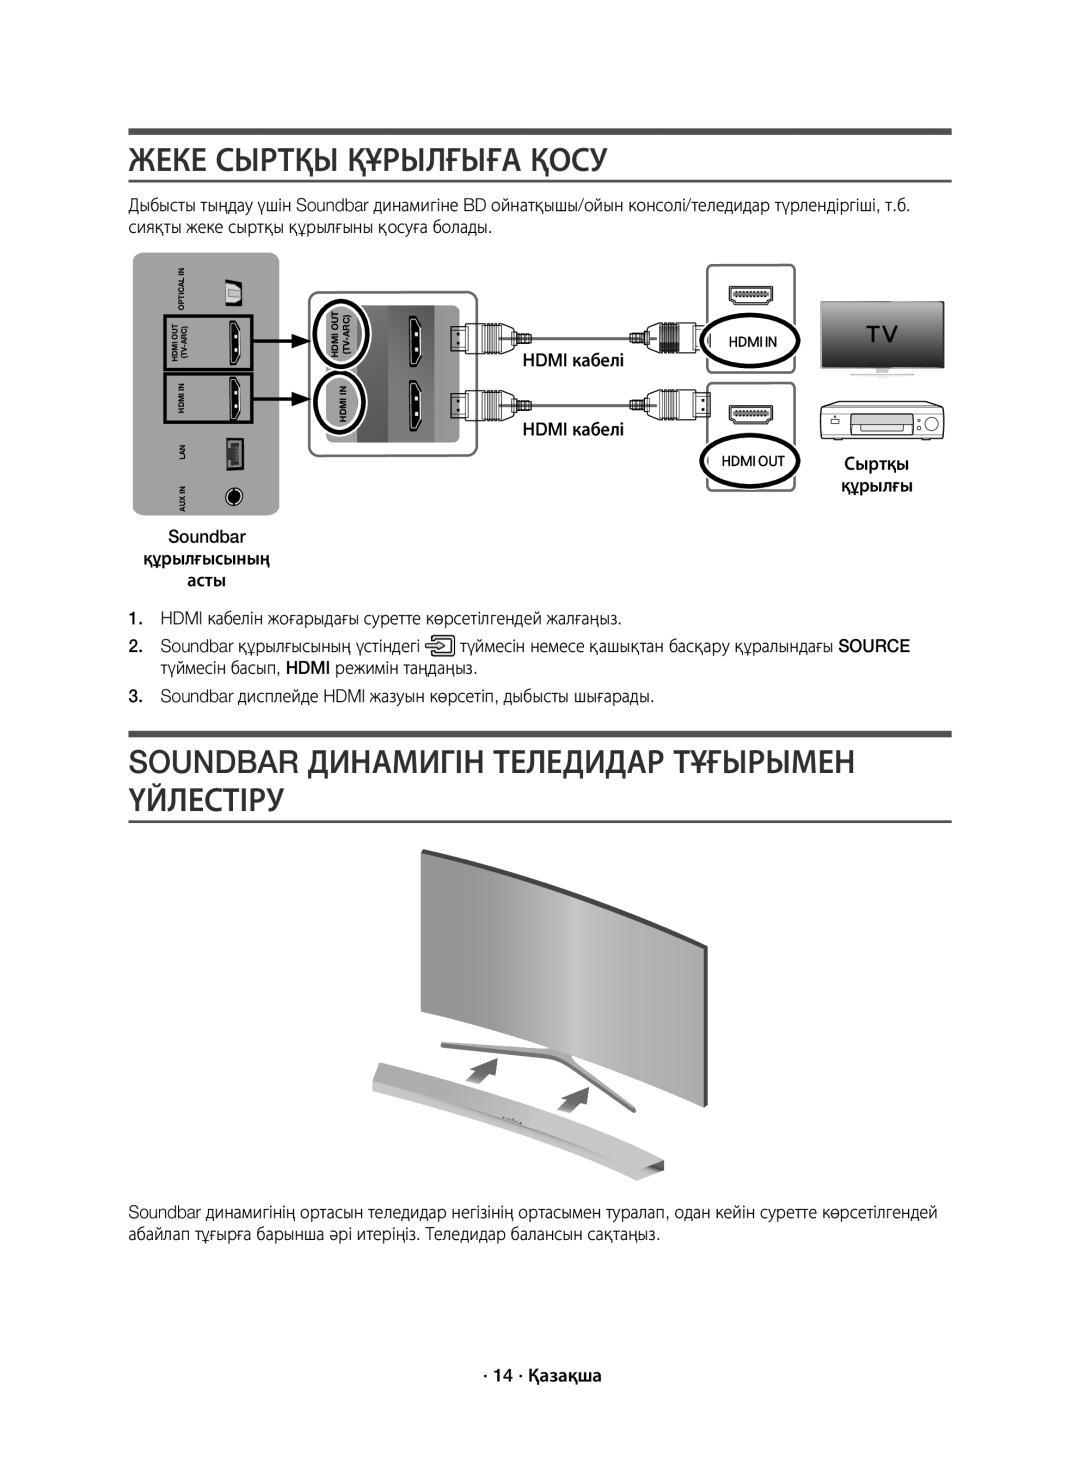 Samsung HW-J7500/RU manual Жеке Сыртқы Құрылғыға Қосу, Soundbar Динамигін Теледидар Тұғырымен Үйлестіру 